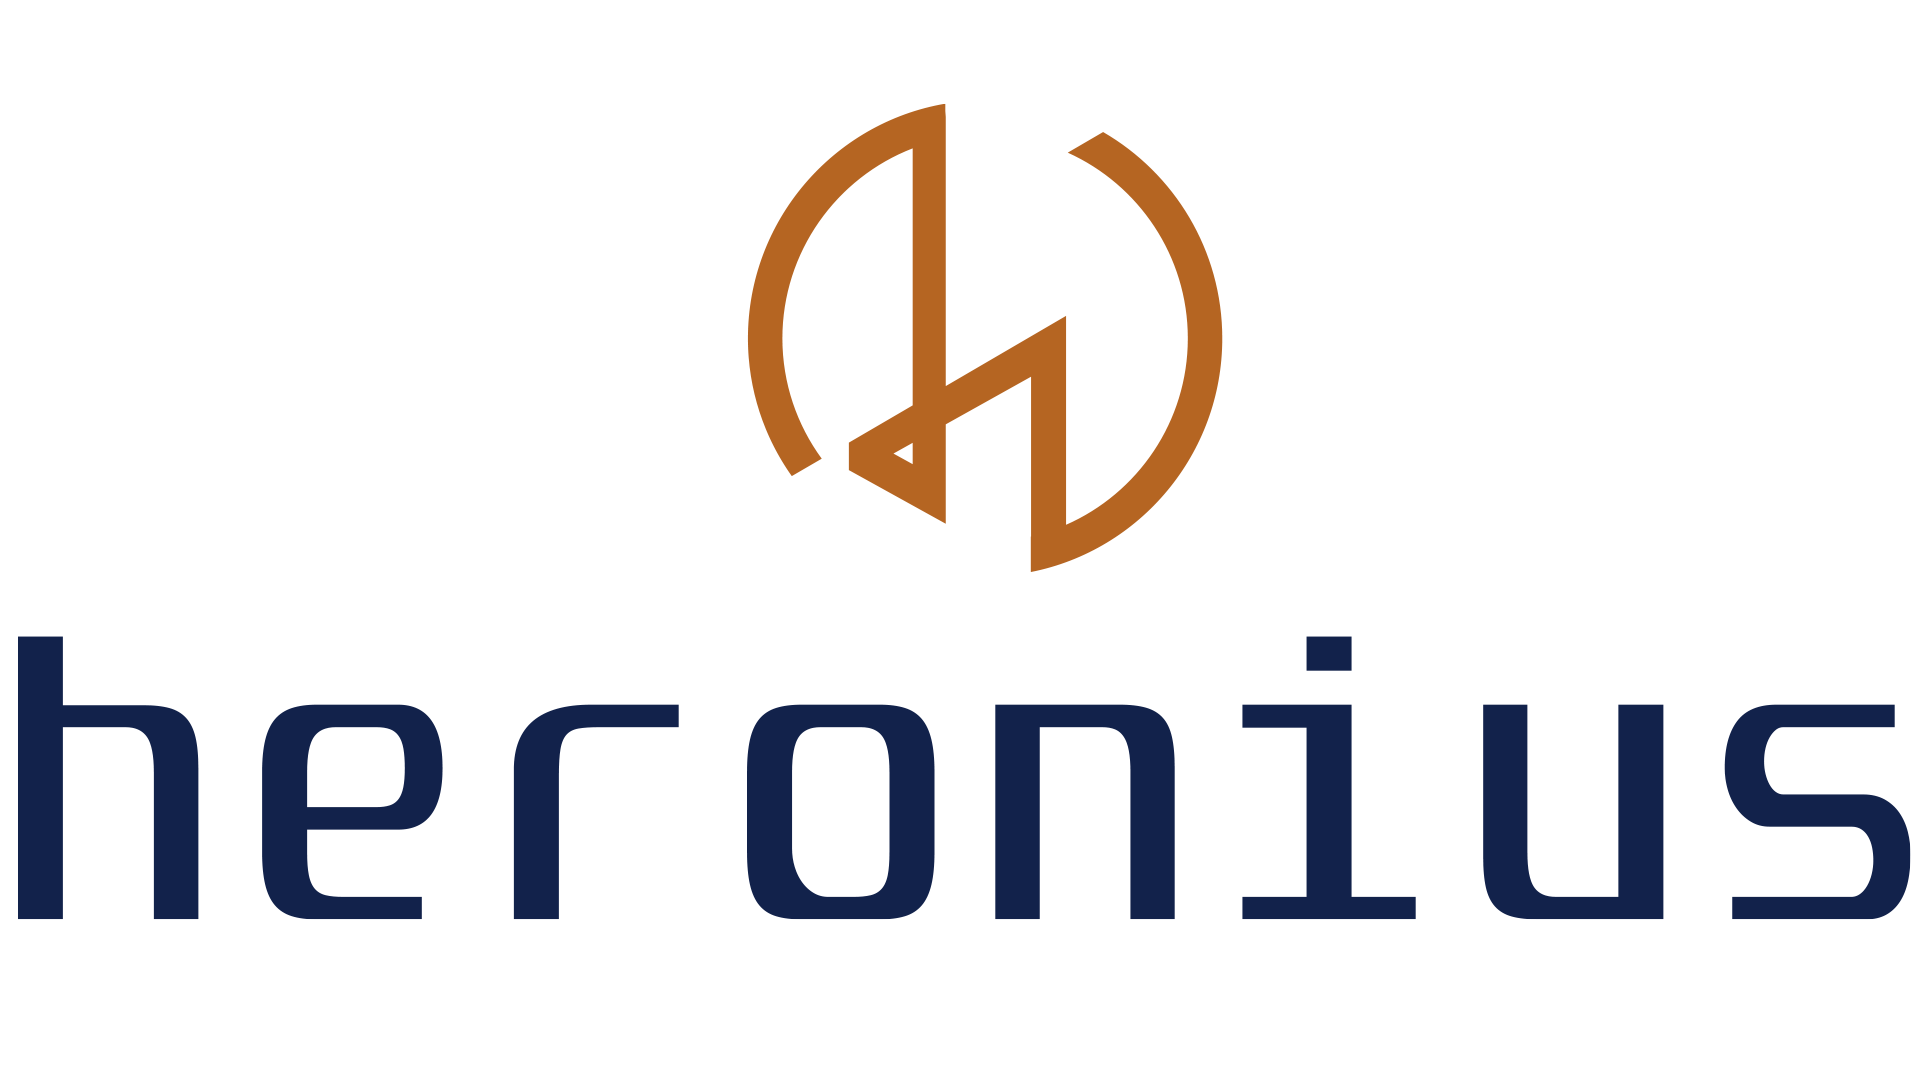 Heronius GmbH